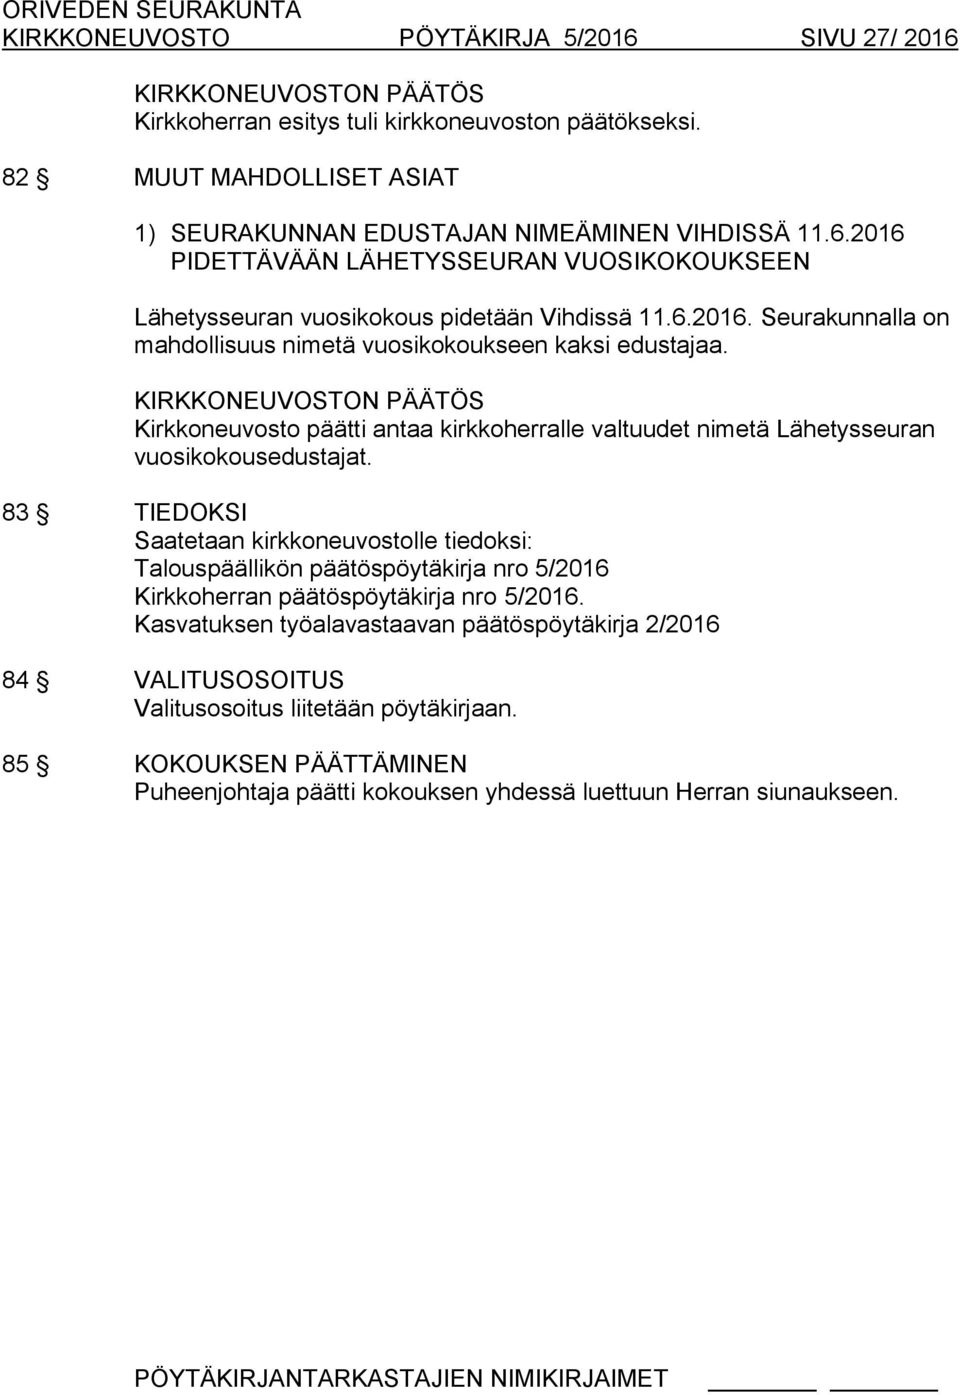 83 TIEDOKSI Saatetaan kirkkoneuvostolle tiedoksi: Talouspäällikön päätöspöytäkirja nro 5/2016 Kirkkoherran päätöspöytäkirja nro 5/2016.